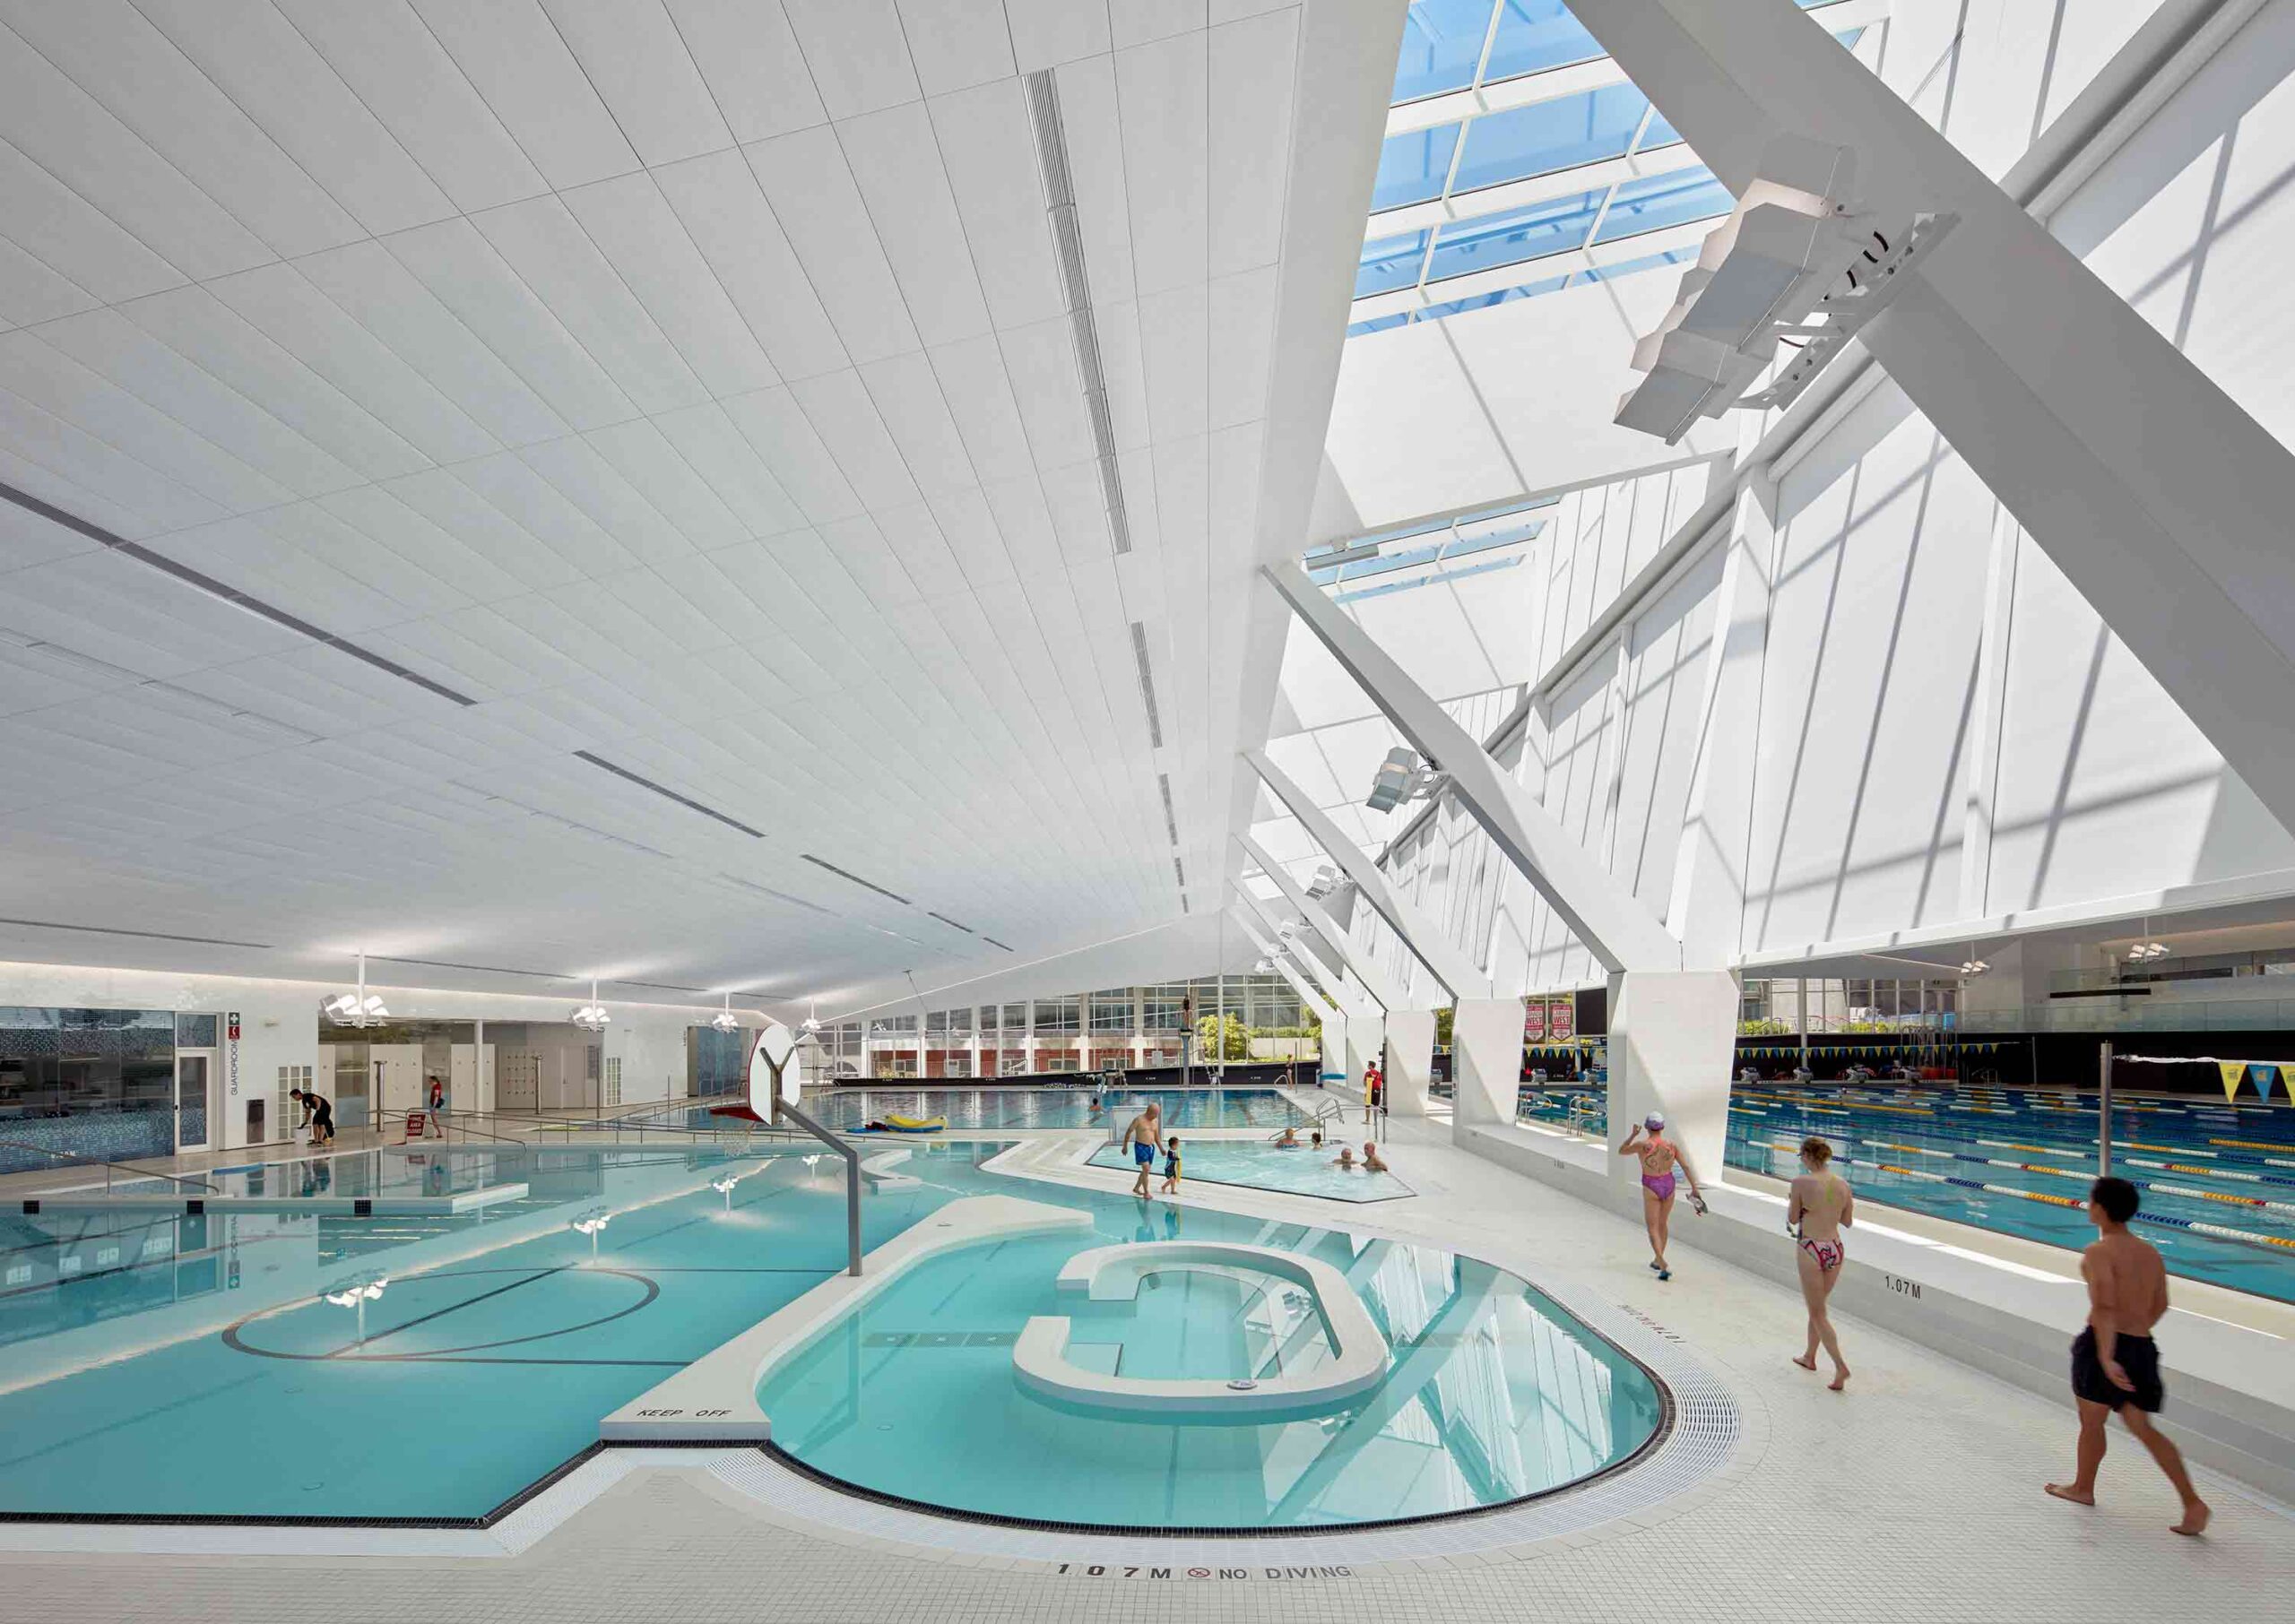 UBC Aquatic Centre by MJMA Architecture & Design